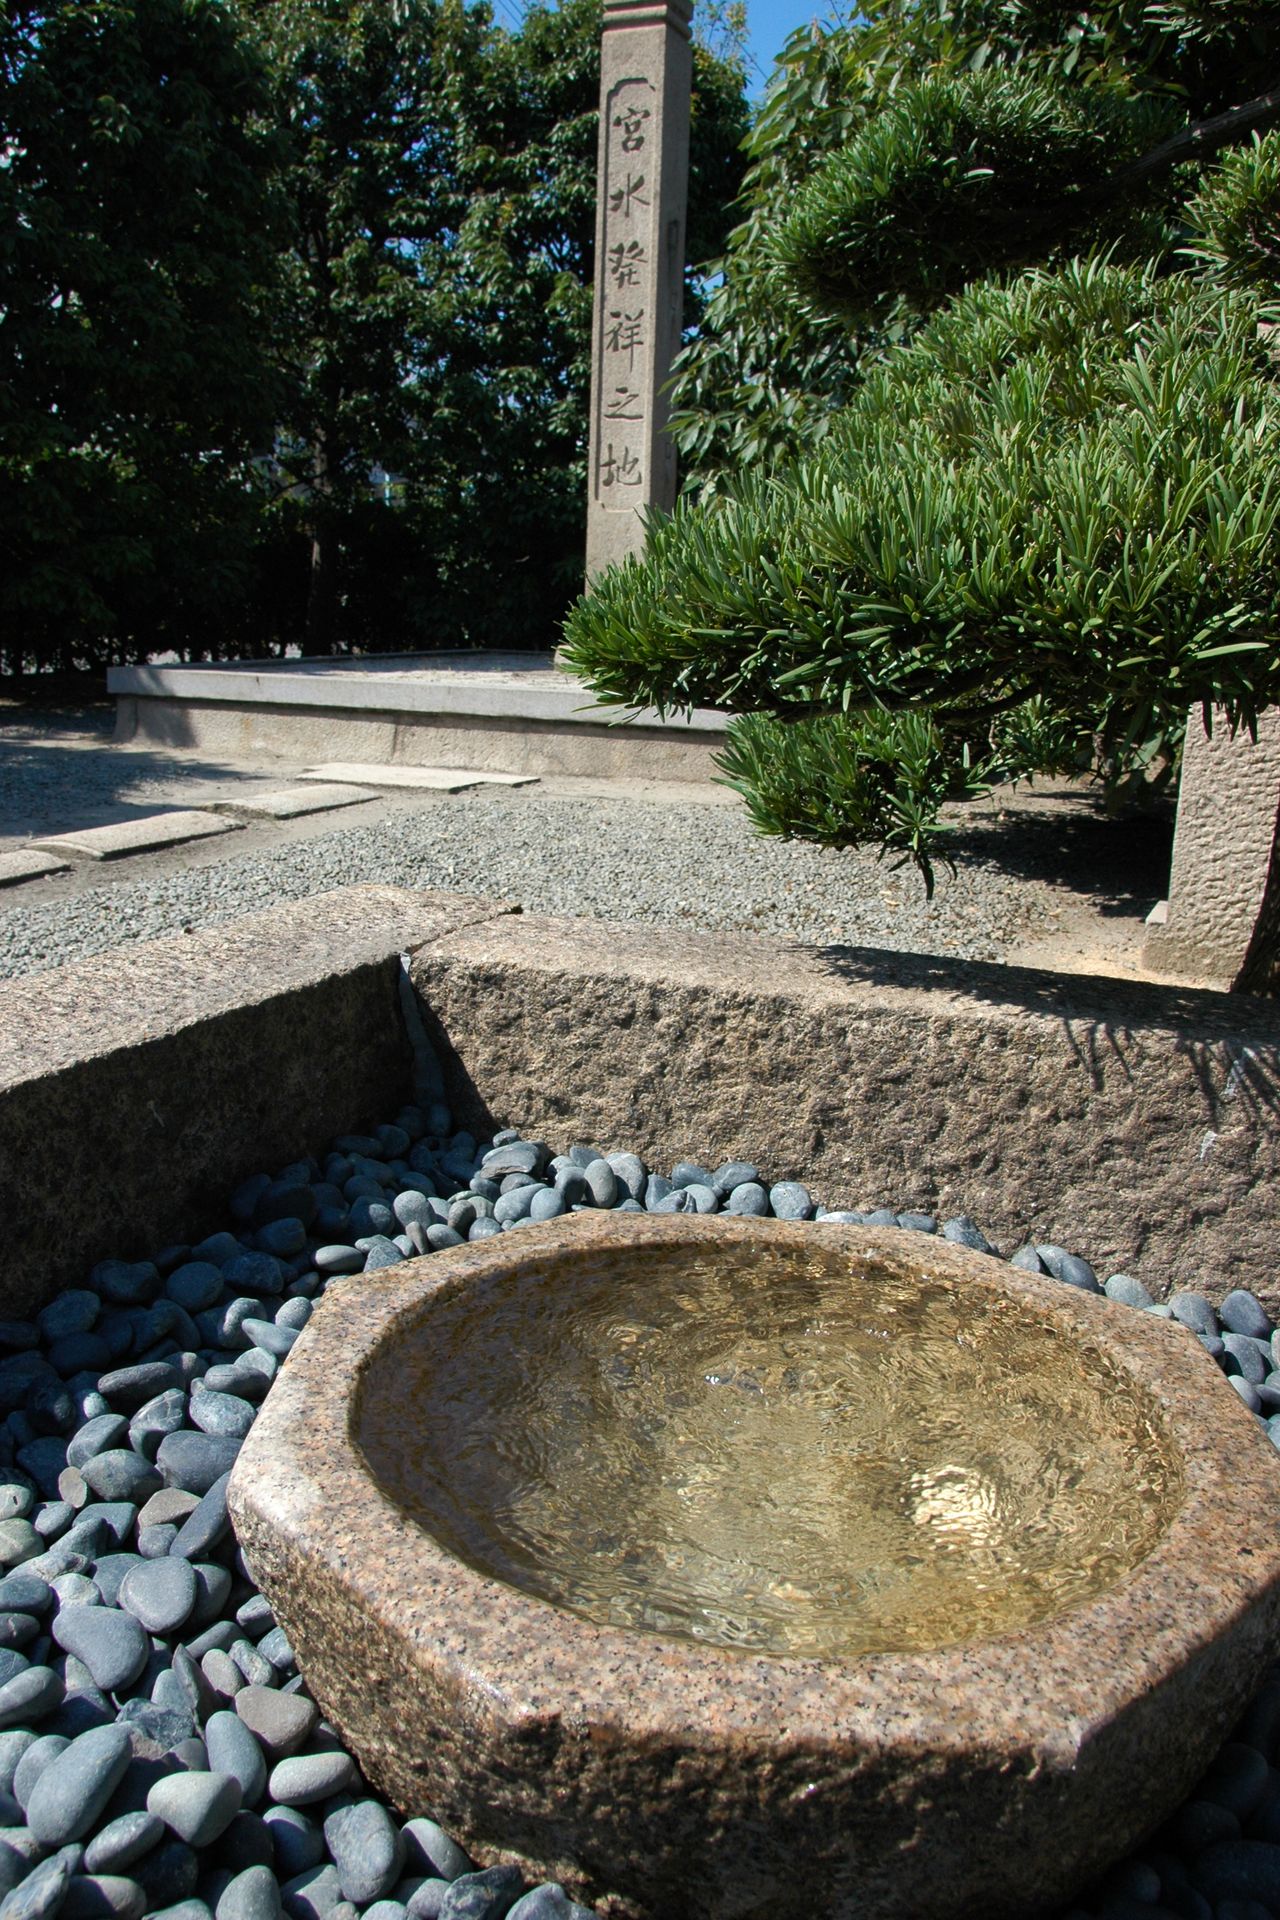 Un petit monument en pierre marque le site de la découverte de l’eau miyamizu.